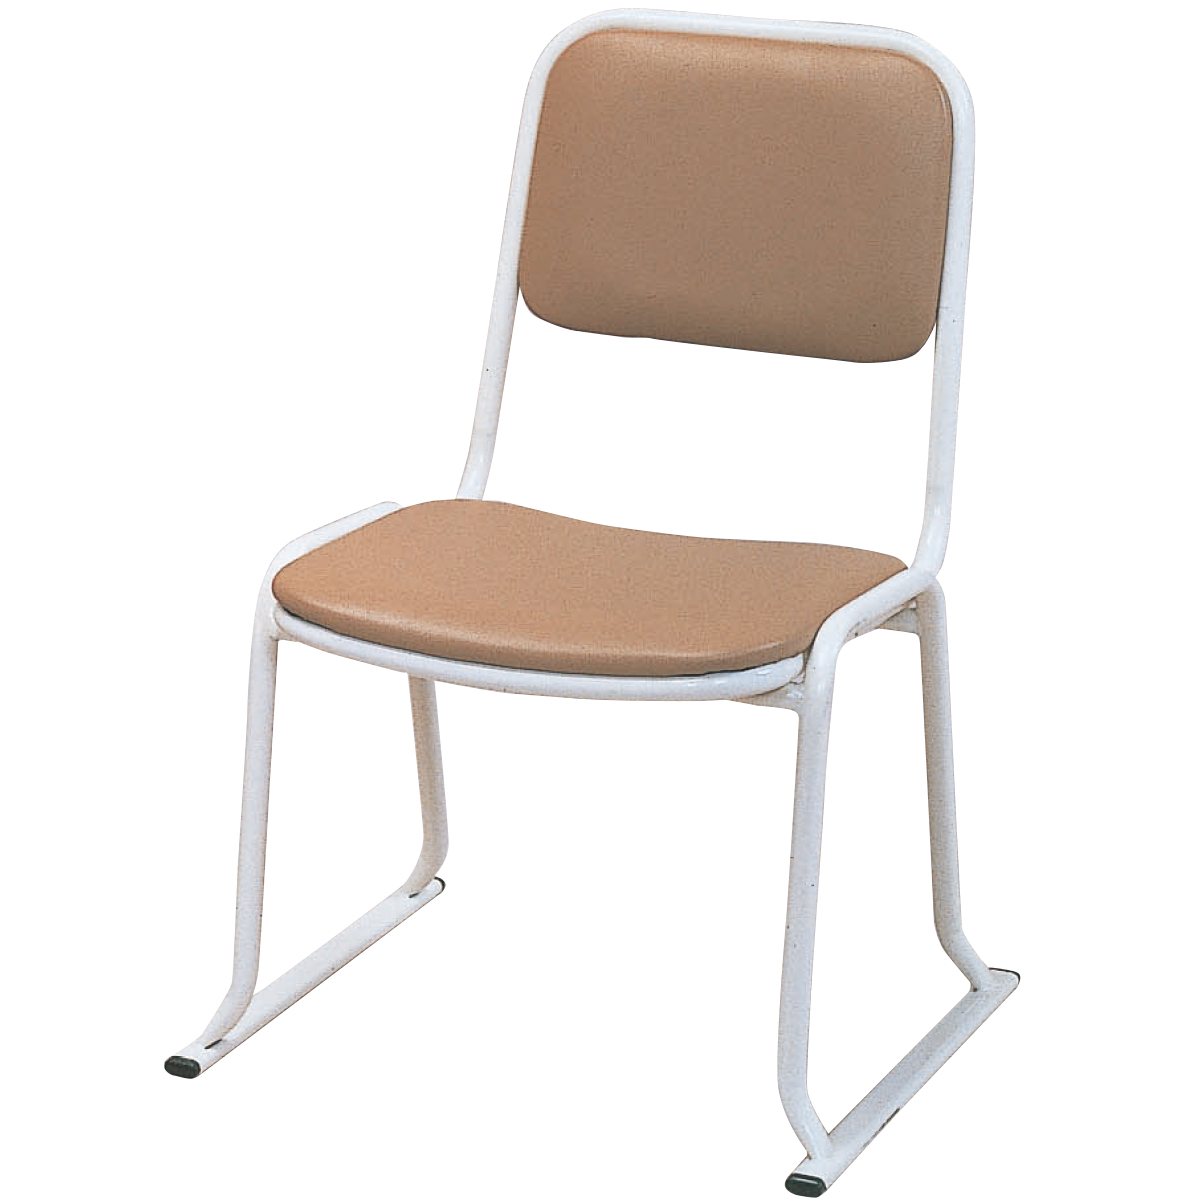 E4022本堂お詣り用椅子(スチール製)